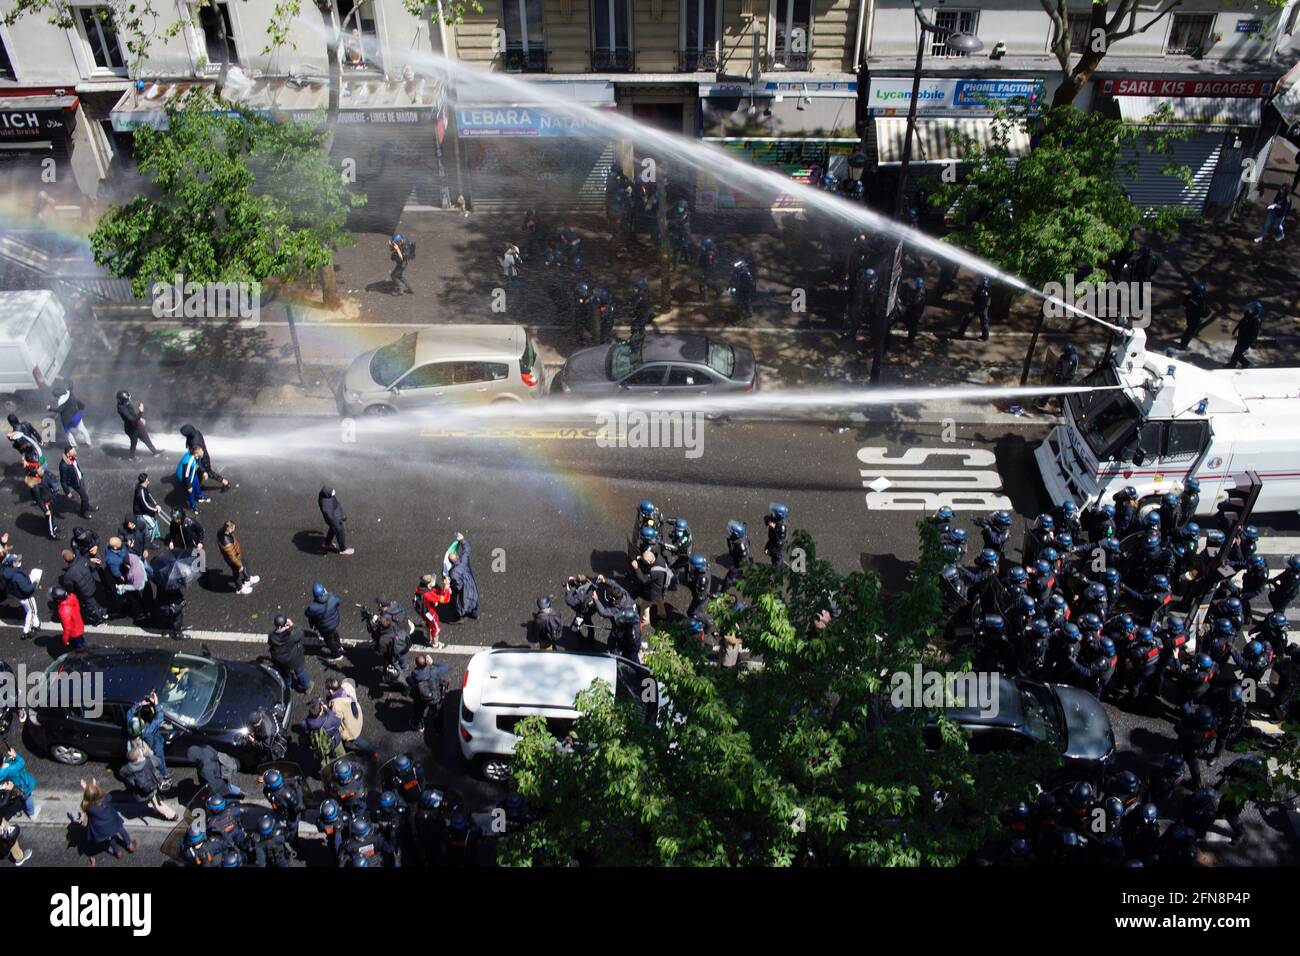 La police a pompier du canon à eau pour disperser les partisans palestiniens réunis lors de la manifestation Pro-palestinienne, boulevard Barbès, Paris, France, le 15 mai 2021 Banque D'Images